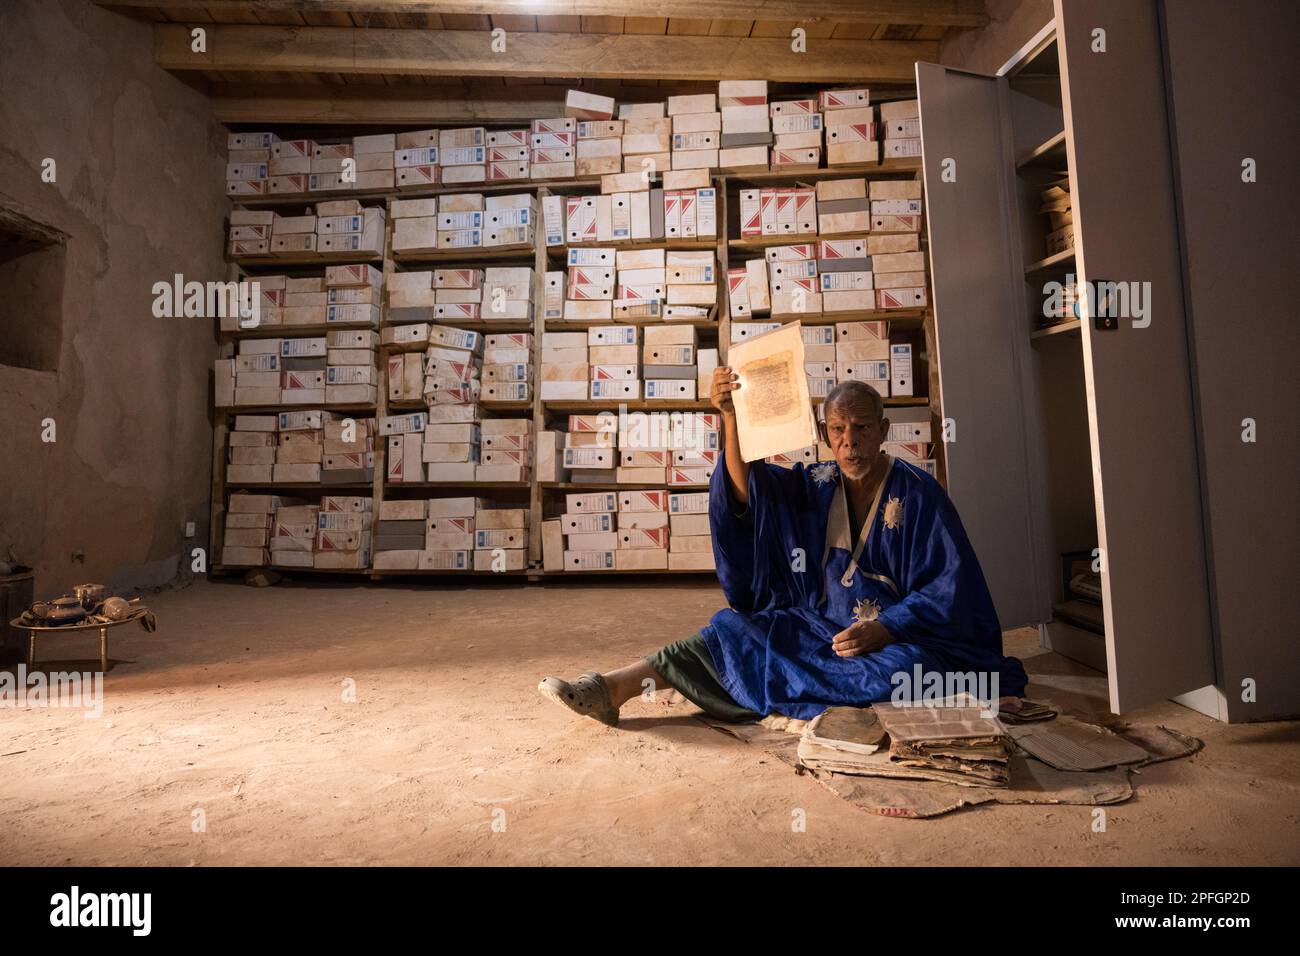 Saif Al Islam von der Ahmed Mahmoud-Bibliothek, die zum UNESCO-Weltkulturerbe gehört und seine Sammlung antiker islamischer Bücher, Chinguetti, Adrar, Mauretanien, zeigt. Stockfoto